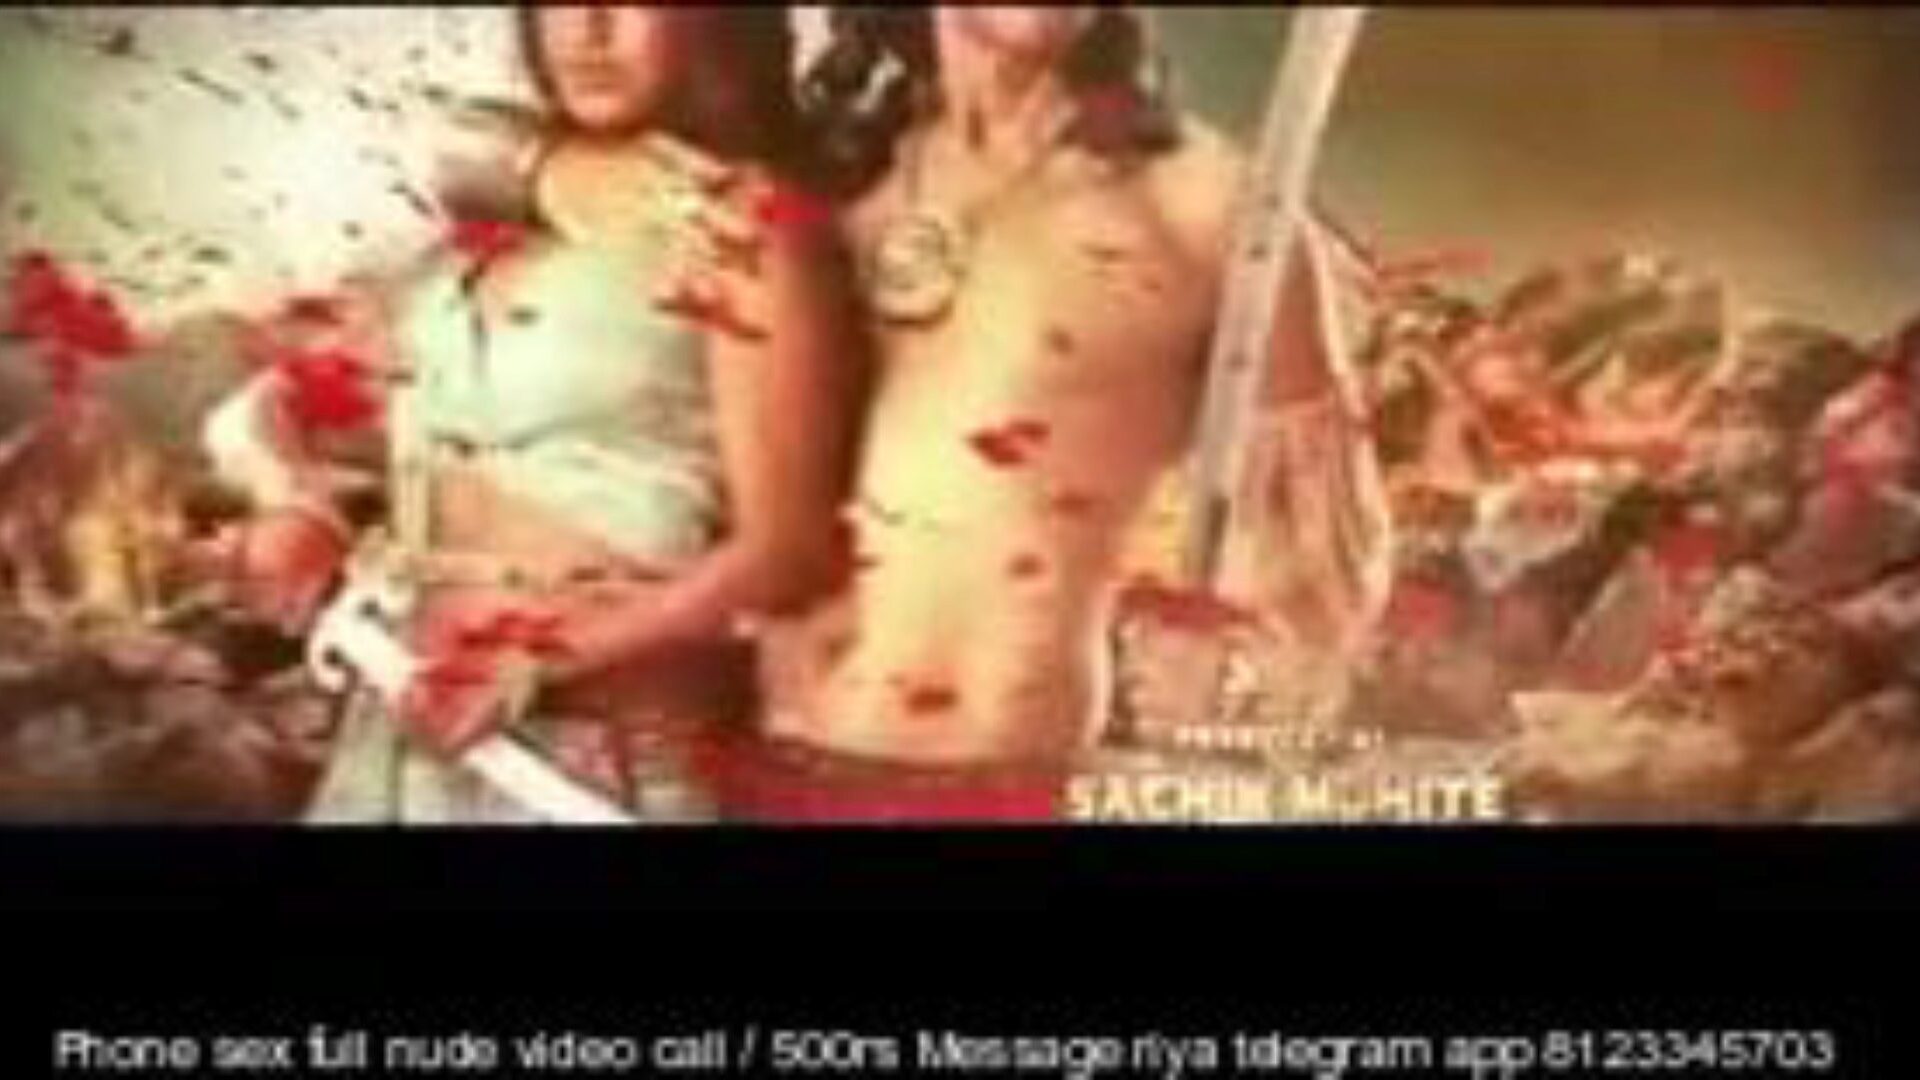 paurashpur 2020 Hindi s01 ер 01 до 07, порно 1a: xhamster часов paurashpur 2020 Hindi s01 ер 01 до 07 клипов на xhamster, лучший секс трубка веб-ресурс с кучей свободным для все индийского хинди PornHub и мобильных хиндих порнофильмов